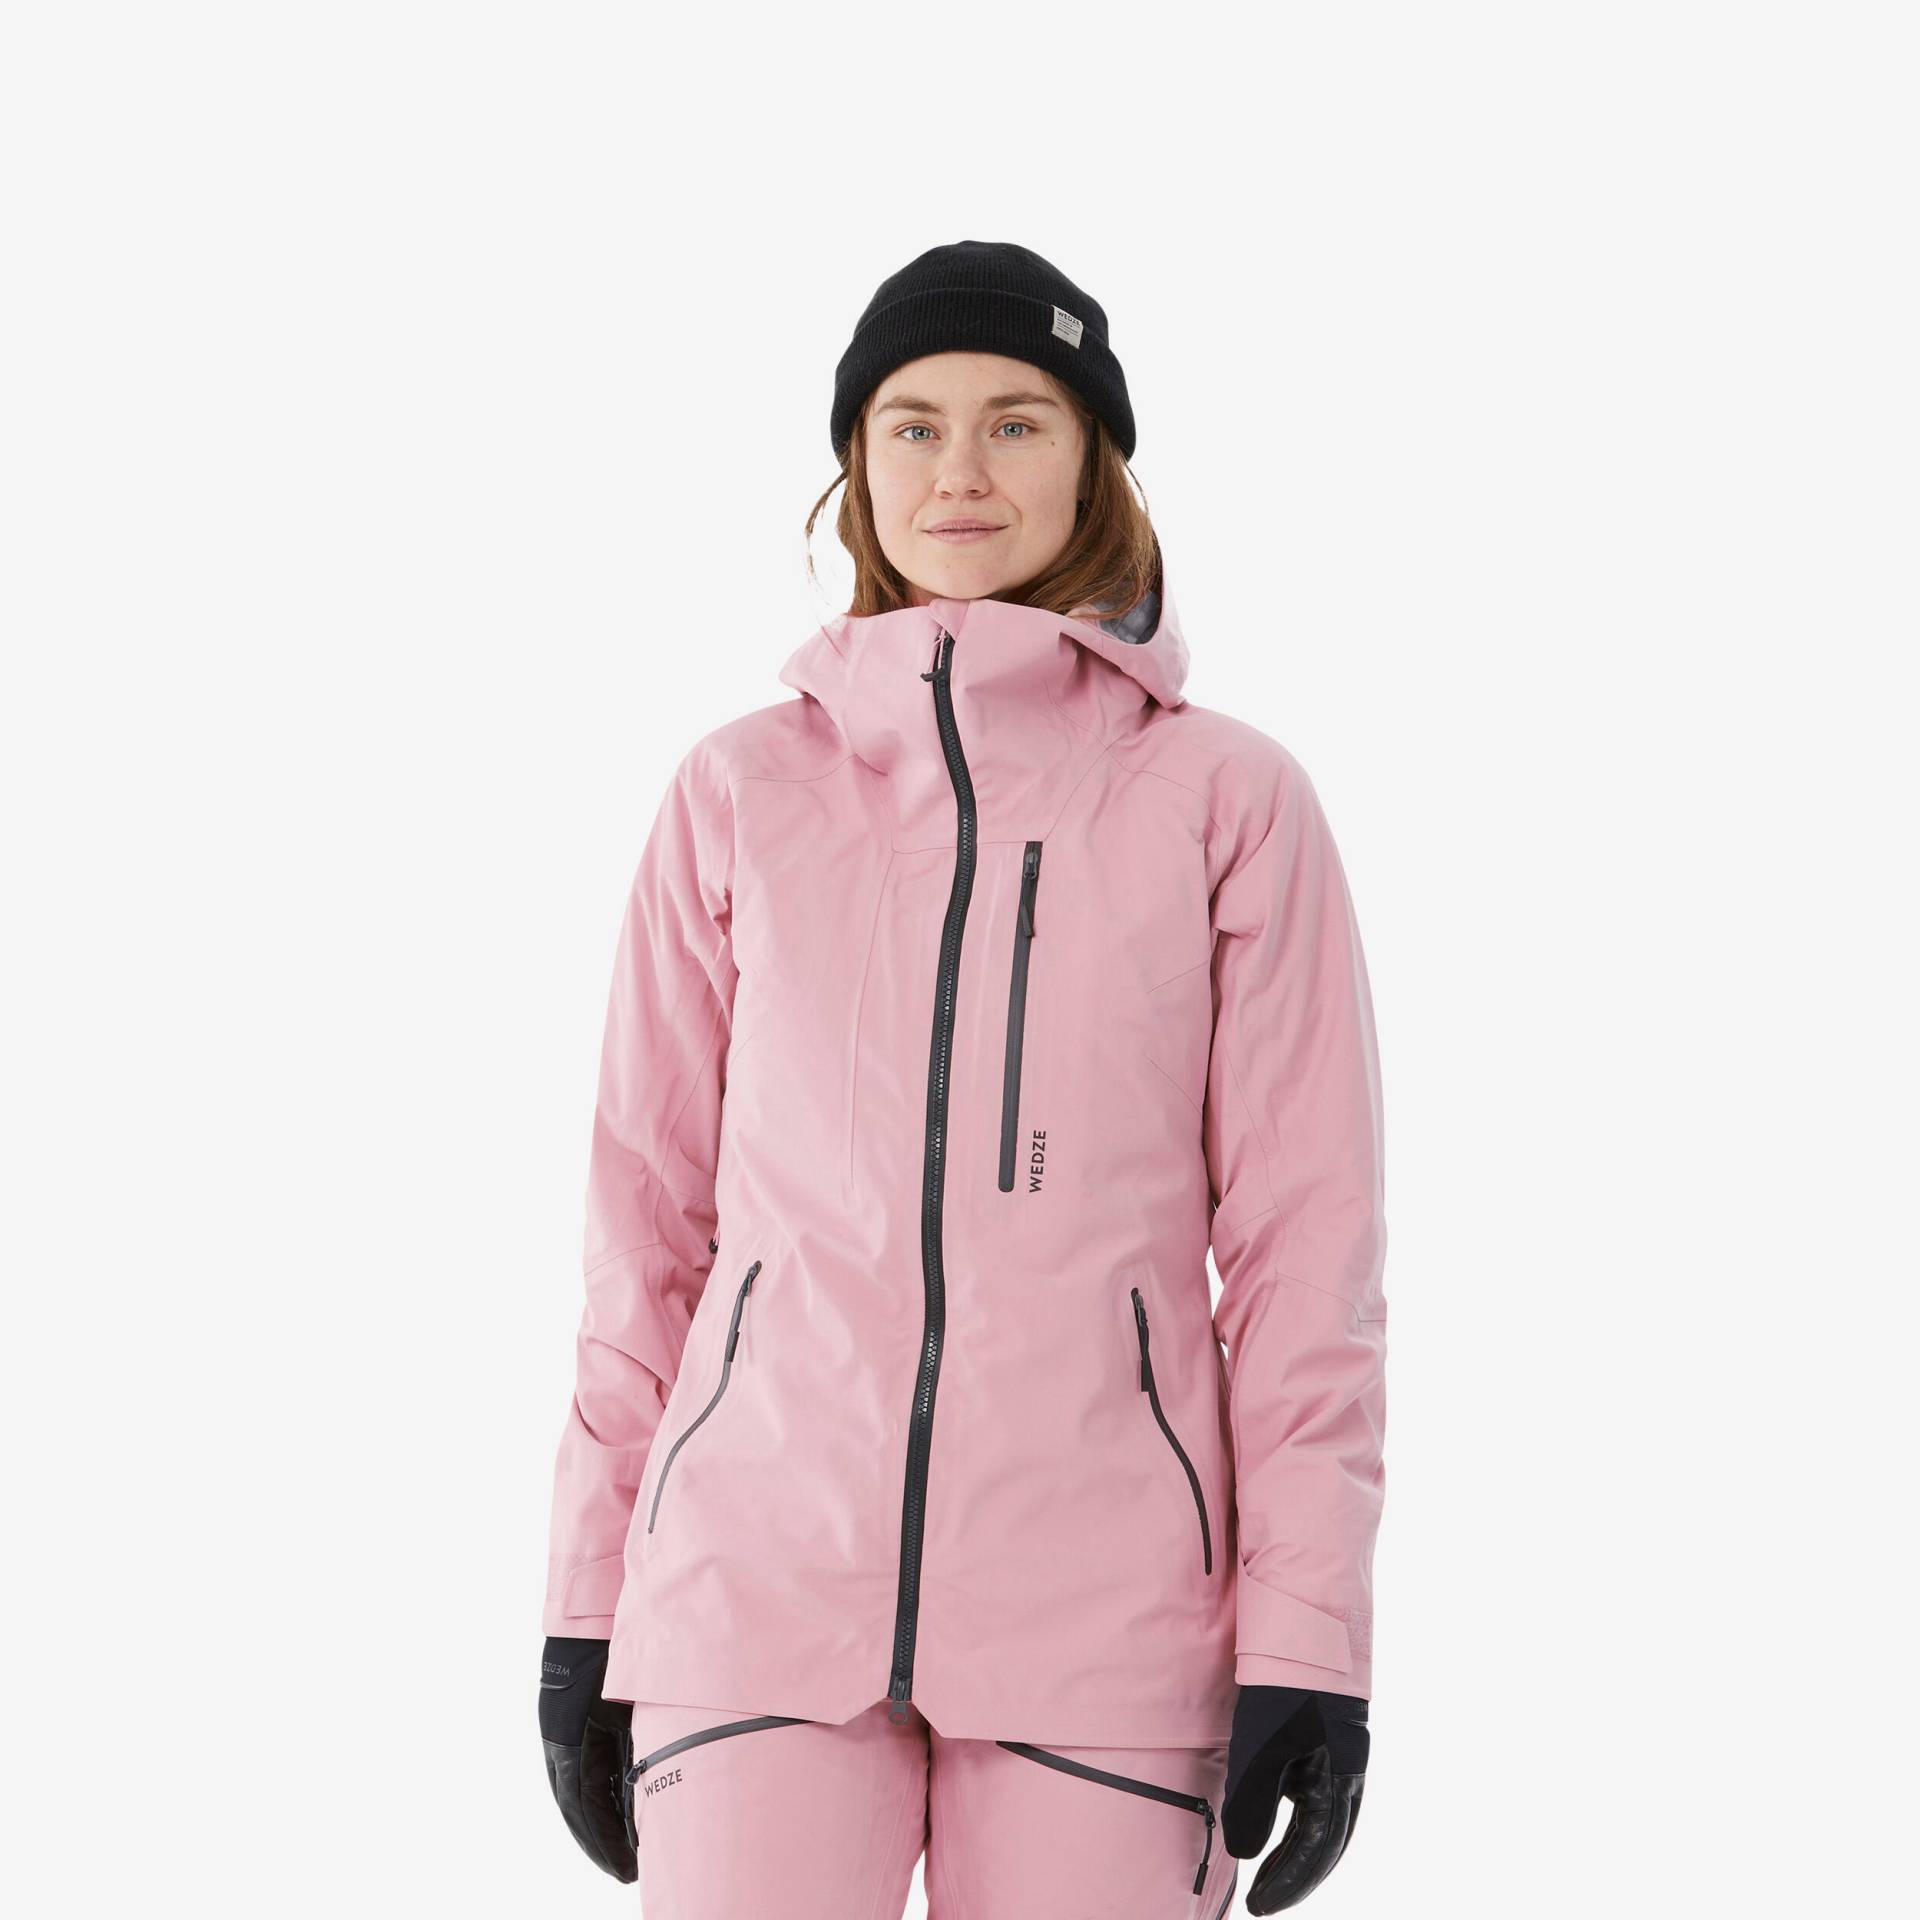 Skijacke Damen - FR 500 blassrosa von WEDZE